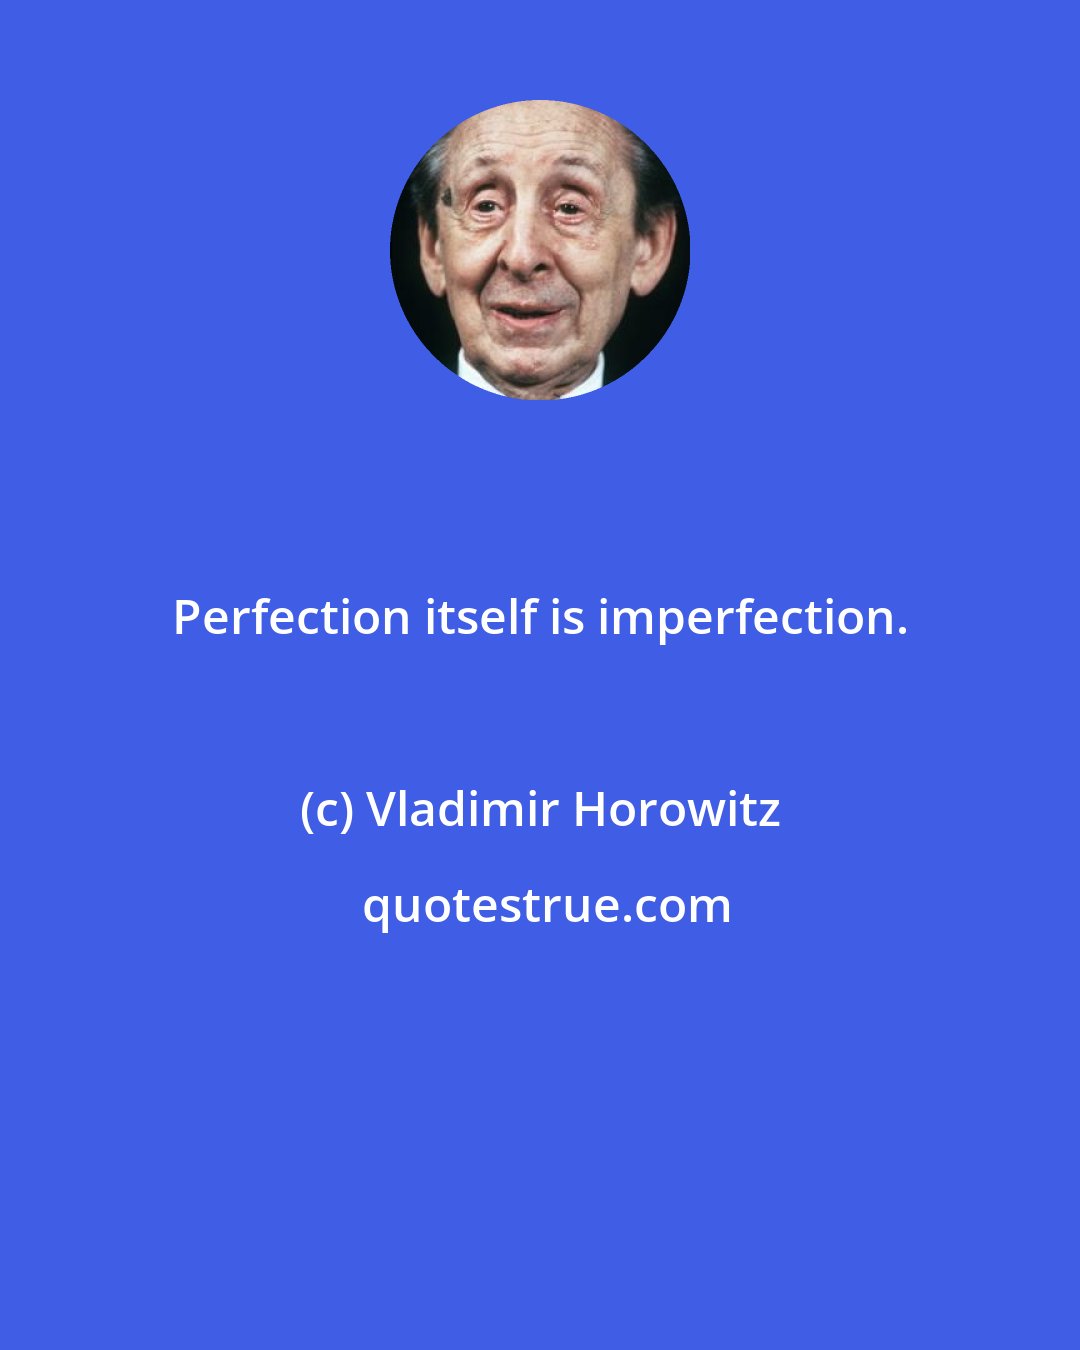 Vladimir Horowitz: Perfection itself is imperfection.